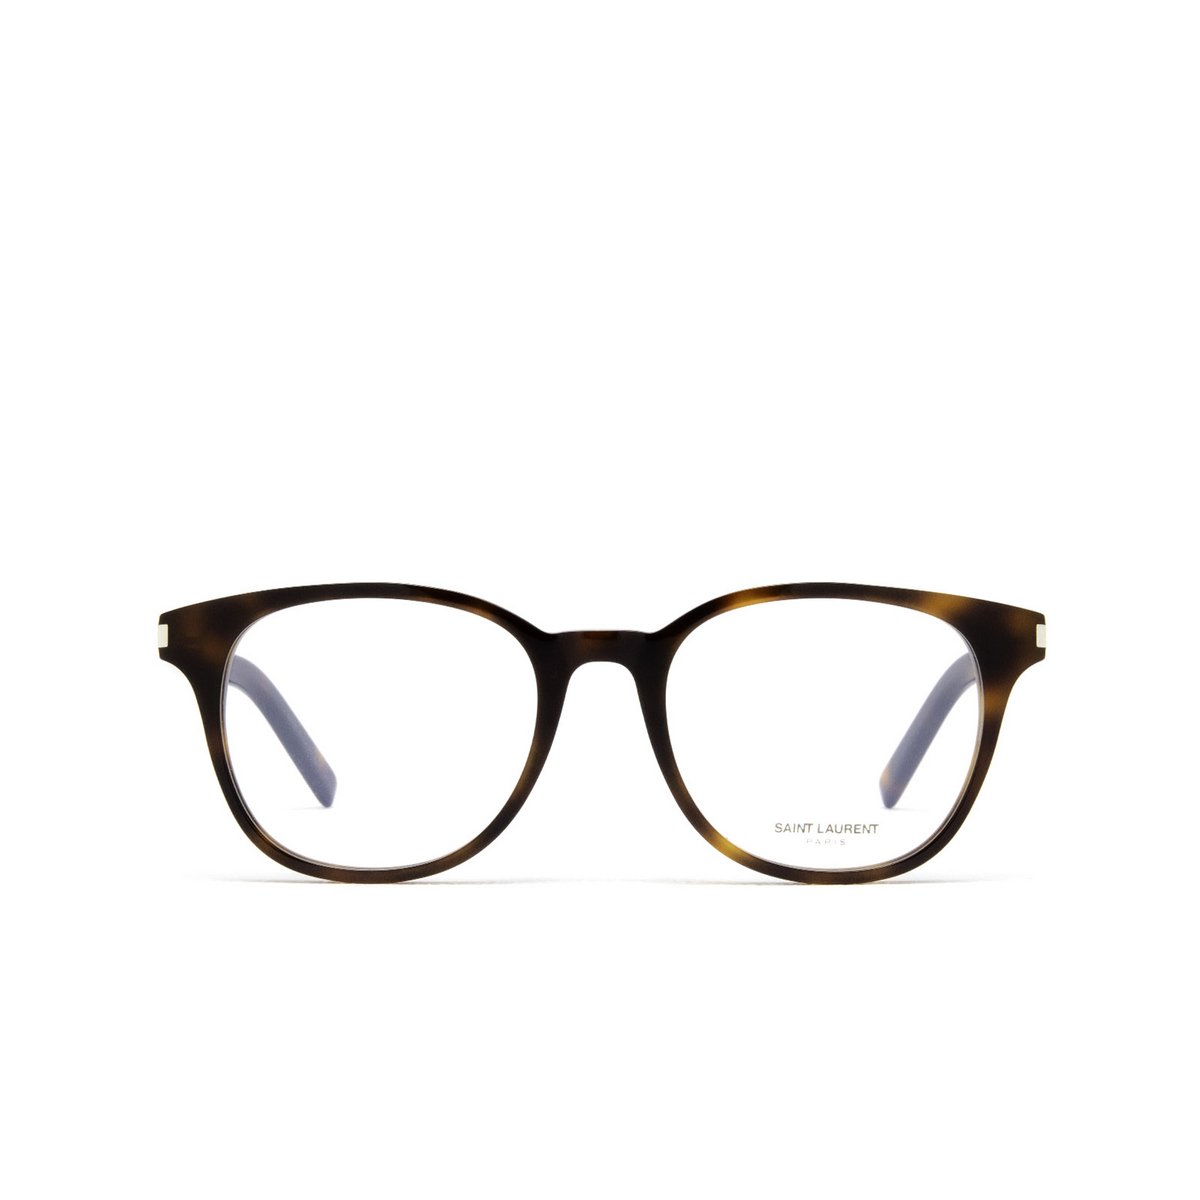 Saint Laurent® Round Eyeglasses: SL 523 color 005 Havana - front view